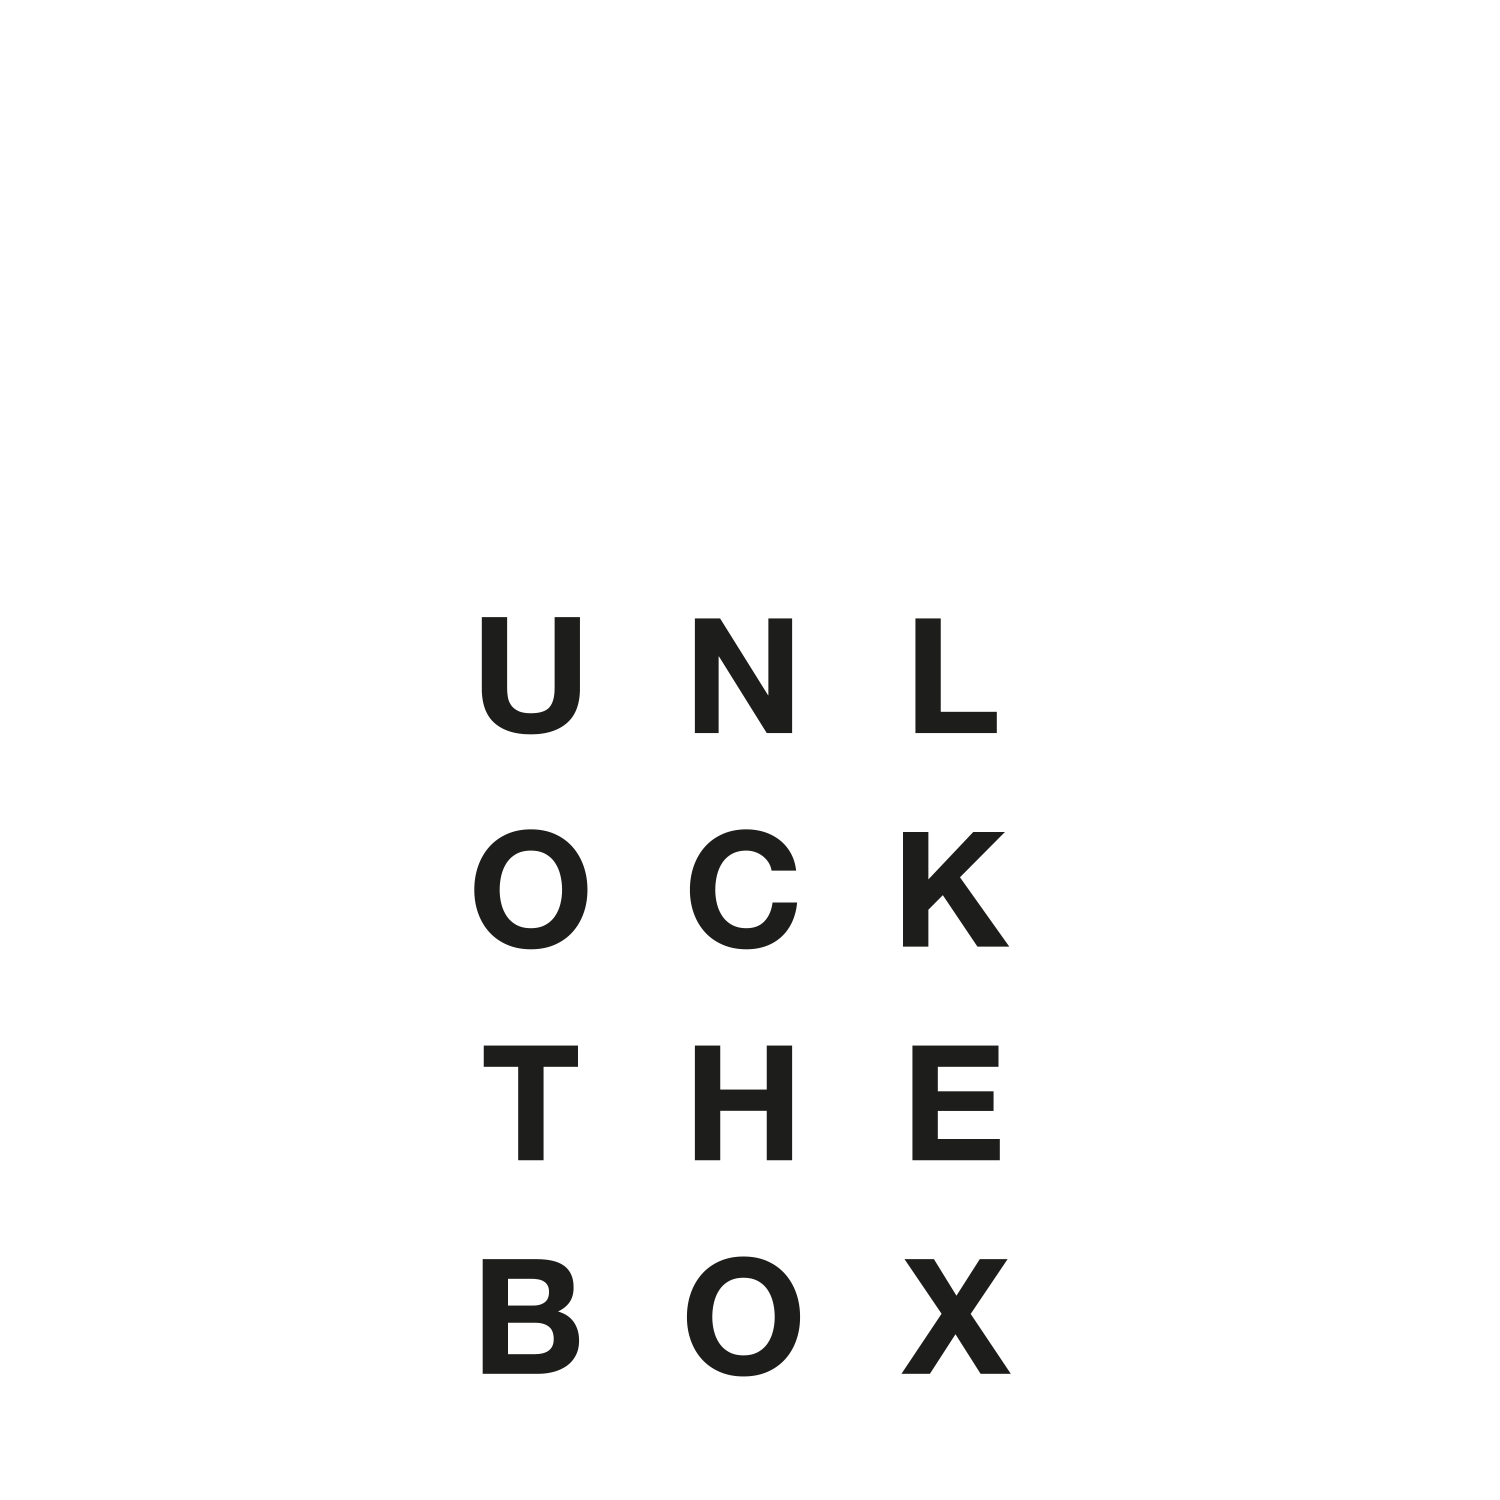 Unlock The Box